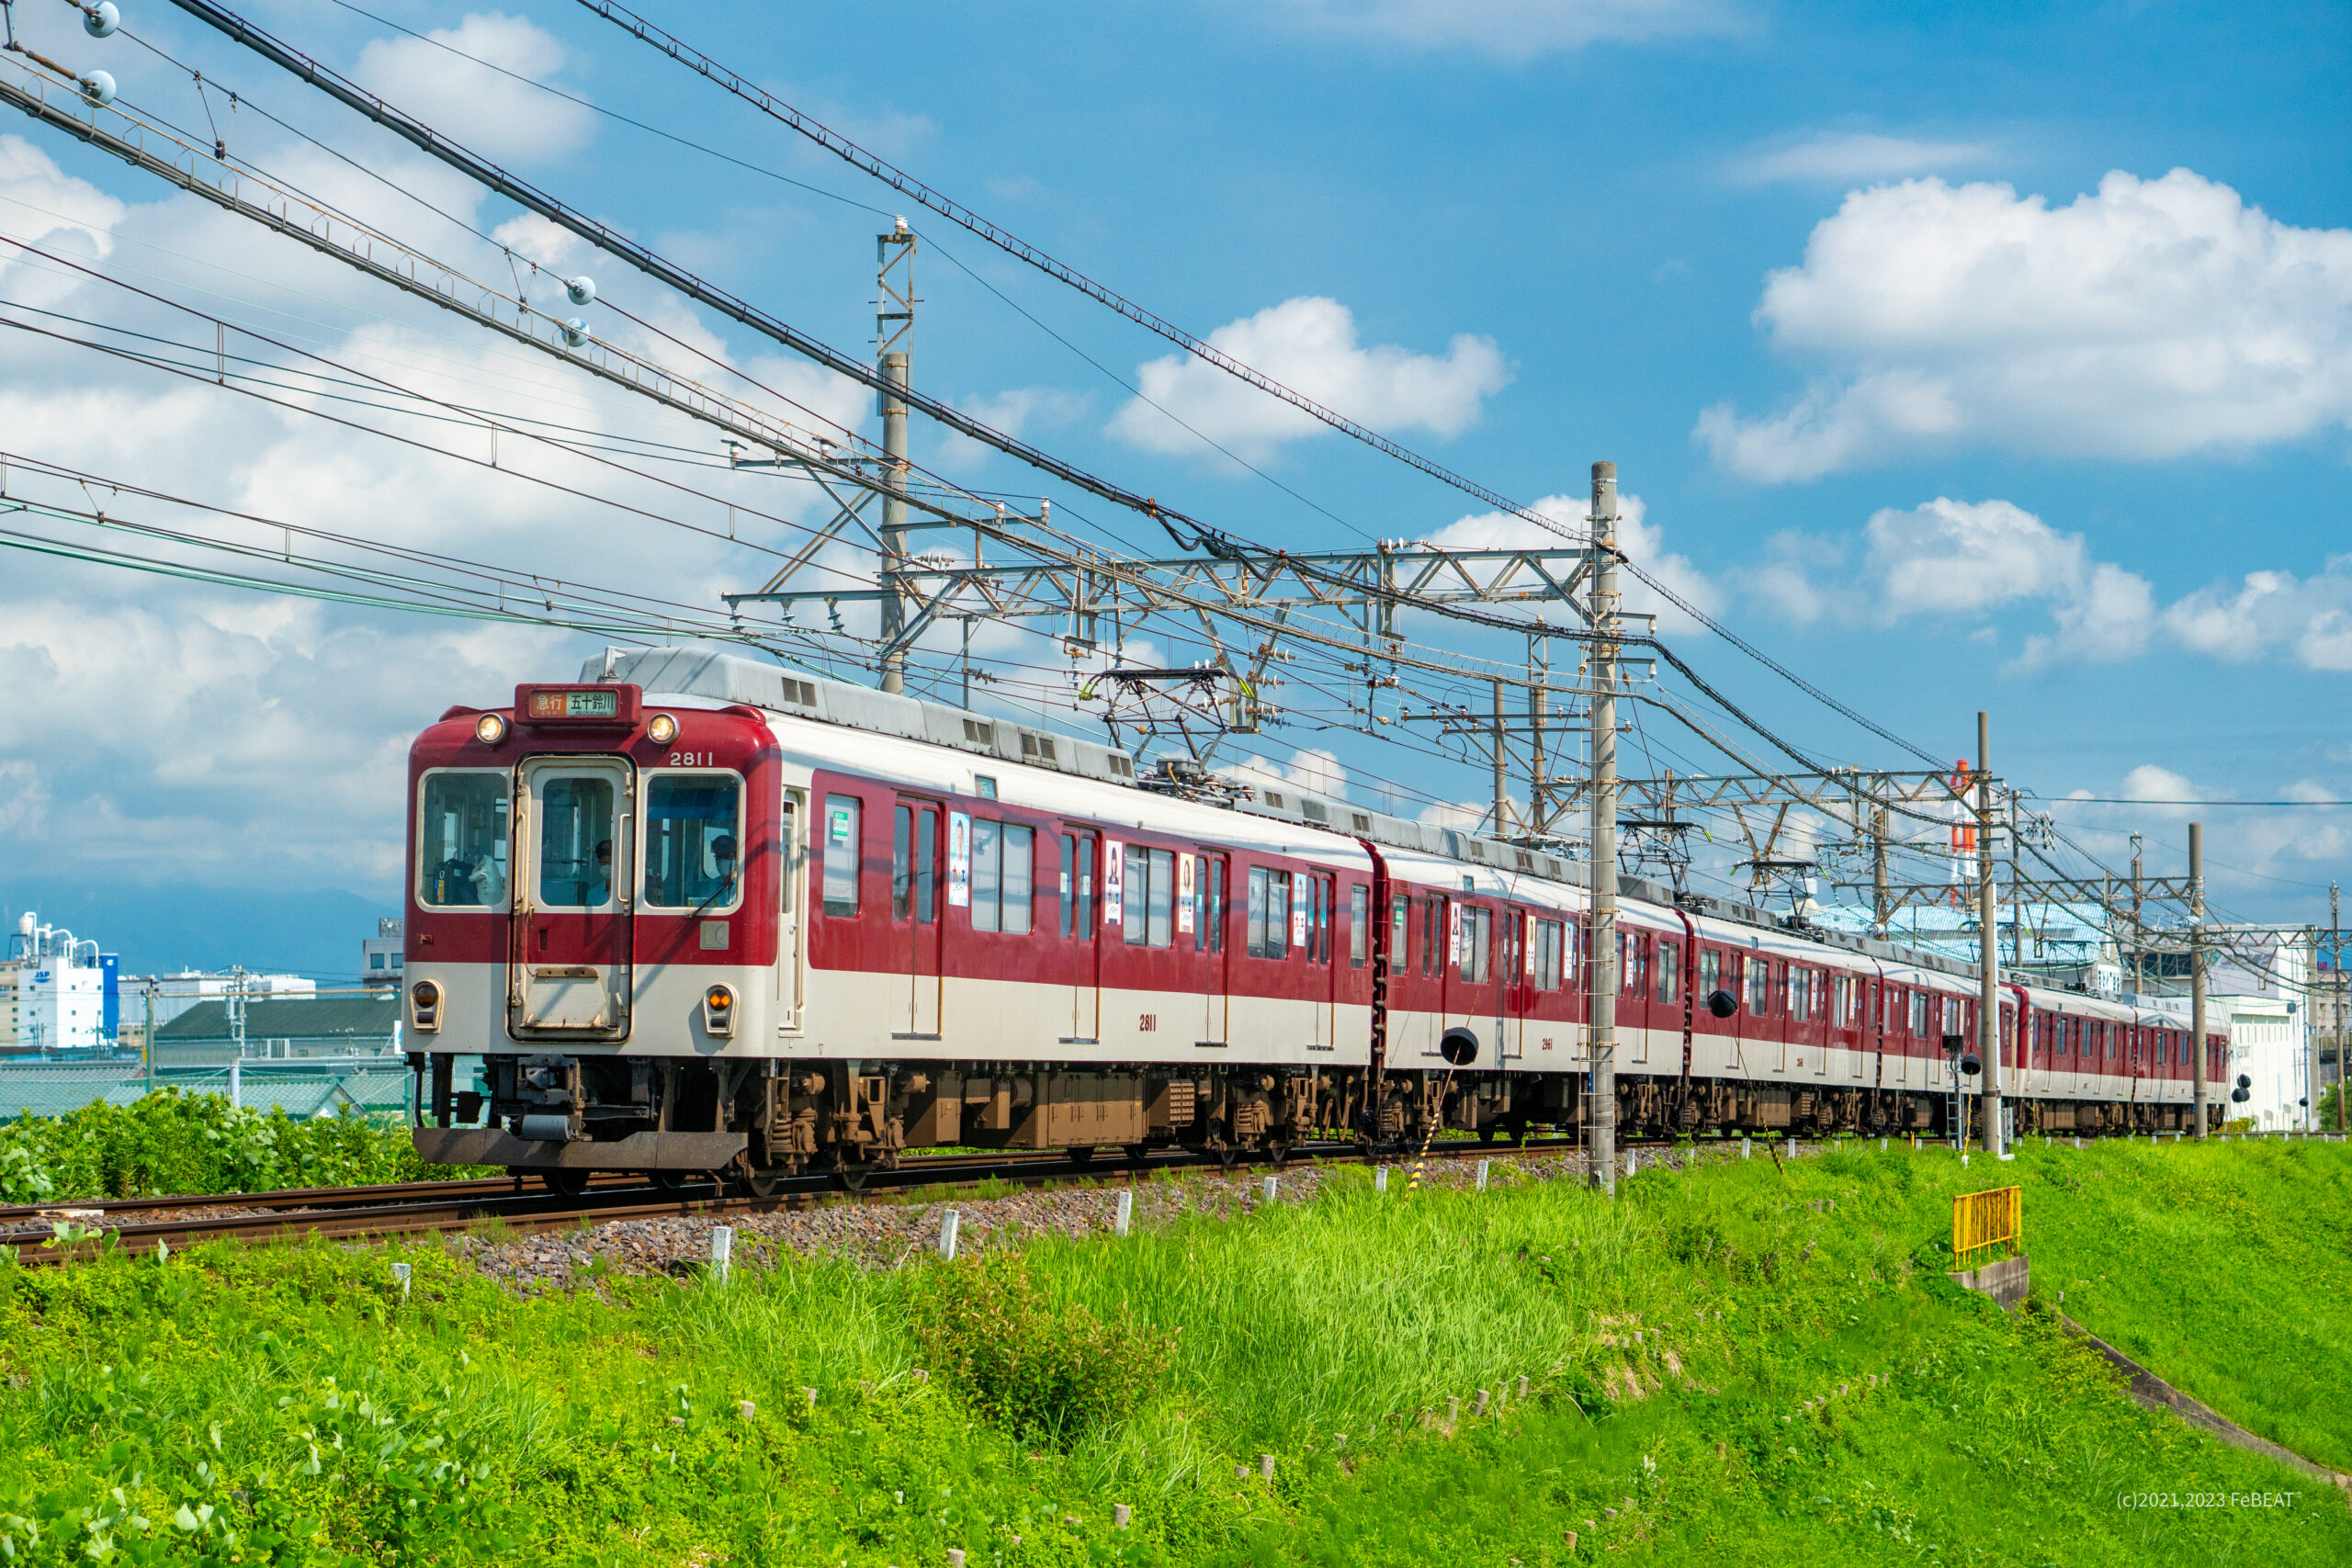 夏空のもと近鉄名古屋線を塩浜から北楠へと走る2800系先頭の急行列車